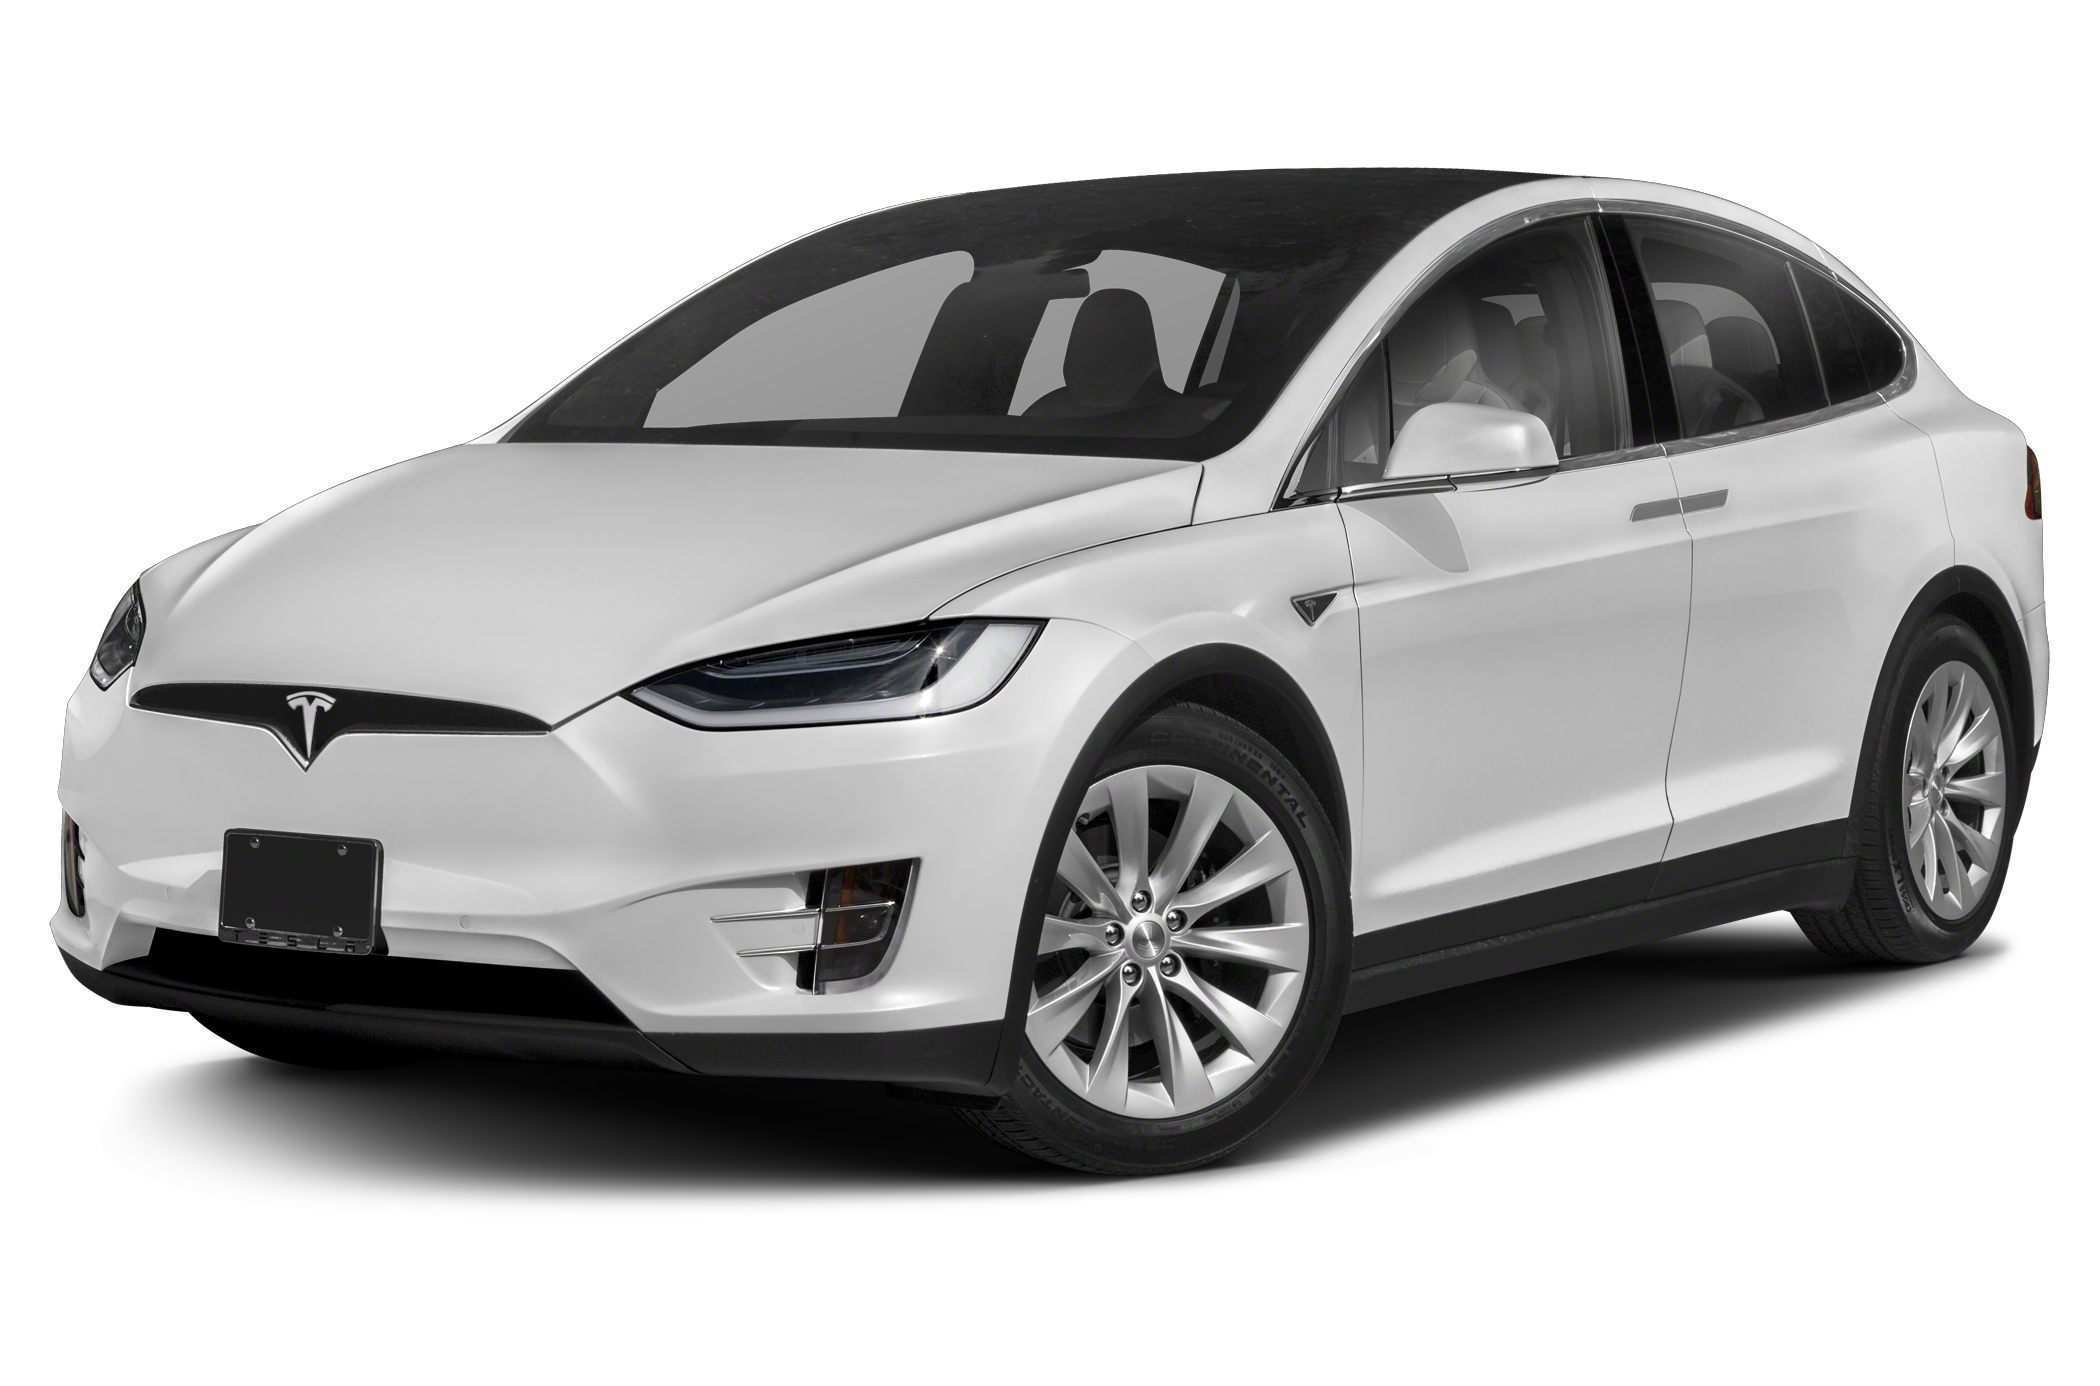 Tesla model x 75d (Standard):